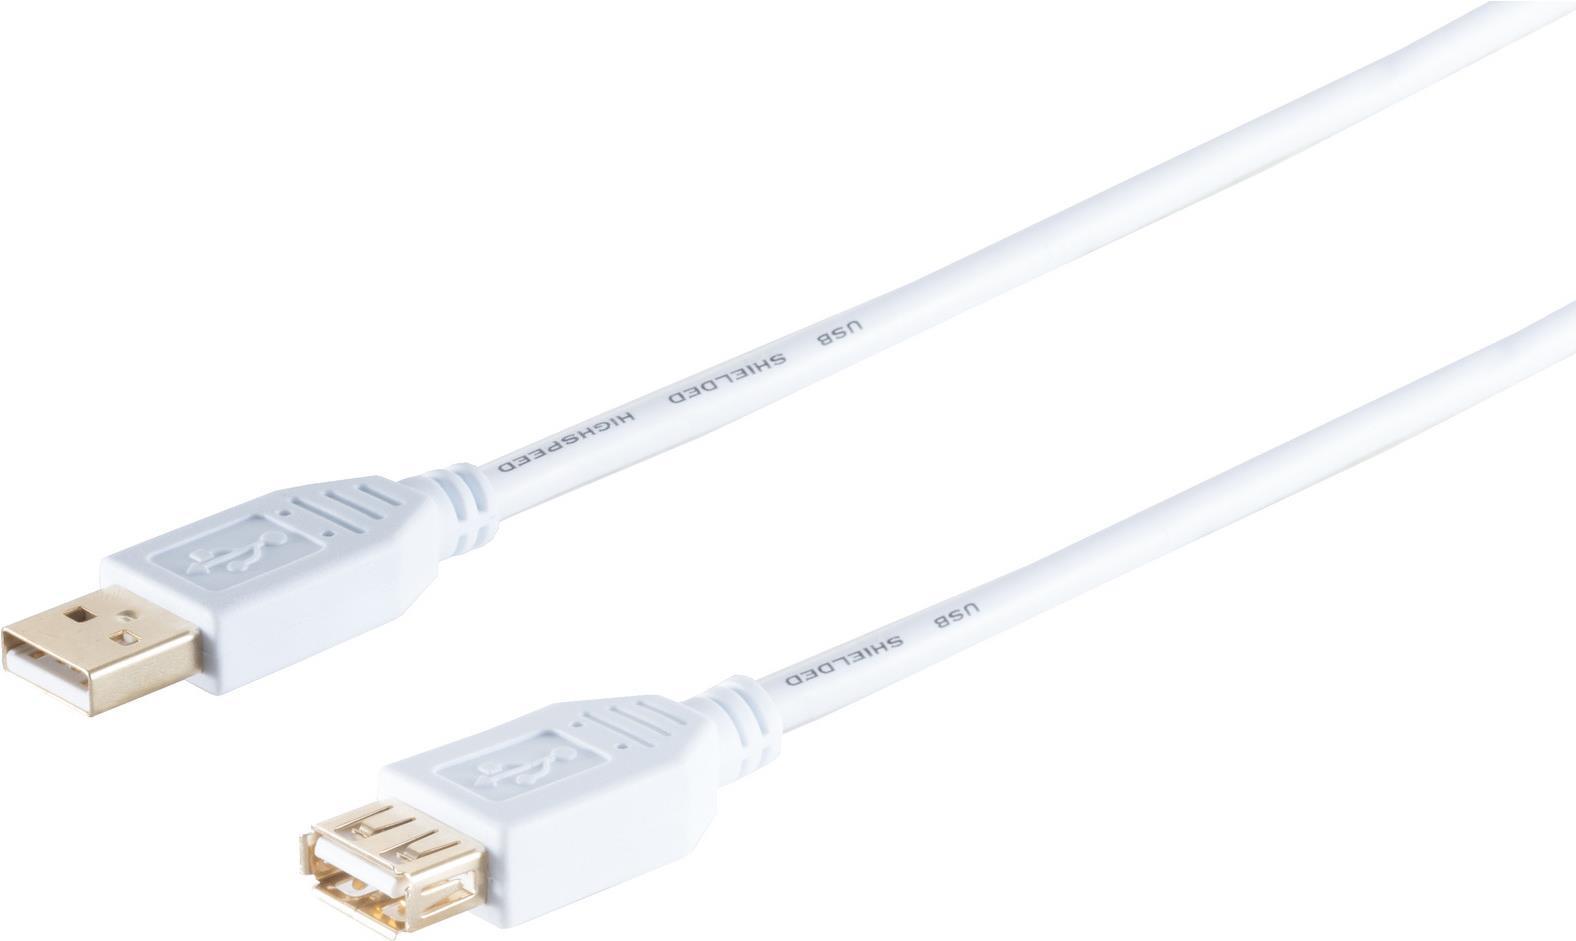 S/CONN maximum connectivity USB High Speed 2.0 Verlängerung, A Stecker auf A Buchse, vergoldete Kontakte, USB 2.0, weiß, 3,0m (77123-W)